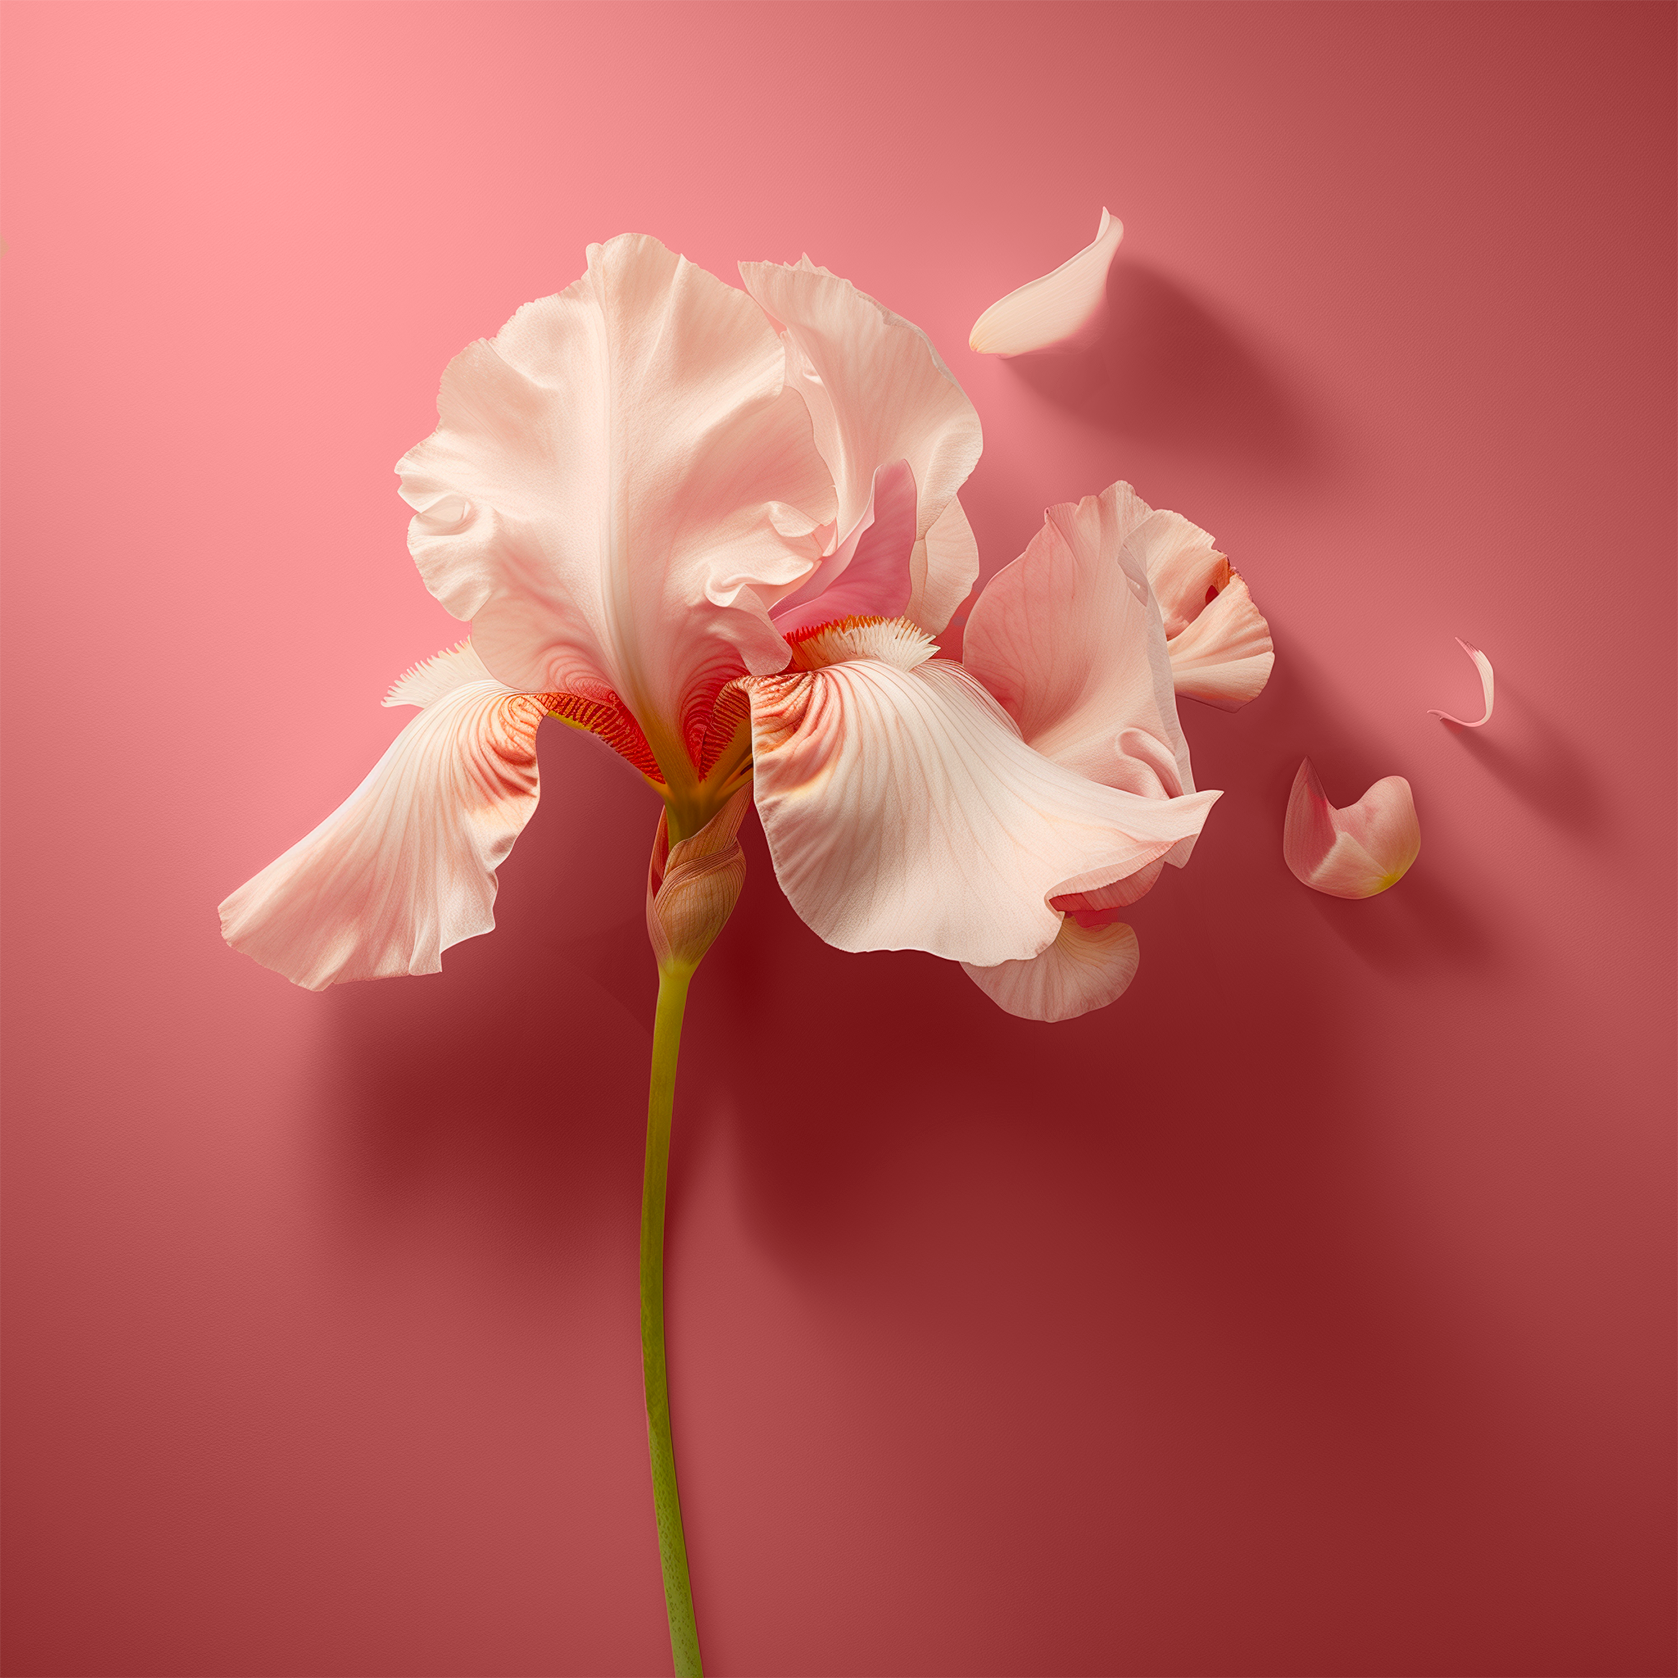 Accord de fleurs d’iris. Dans un fond rose, une photographie d’une fleur d'iris blanche avec des nuances de rose pâle est représentée. La fleur est en pleine floraison avec plusieurs pétales ouverts et quelques-unes tombant, sur une tige verte simple et élancée. 